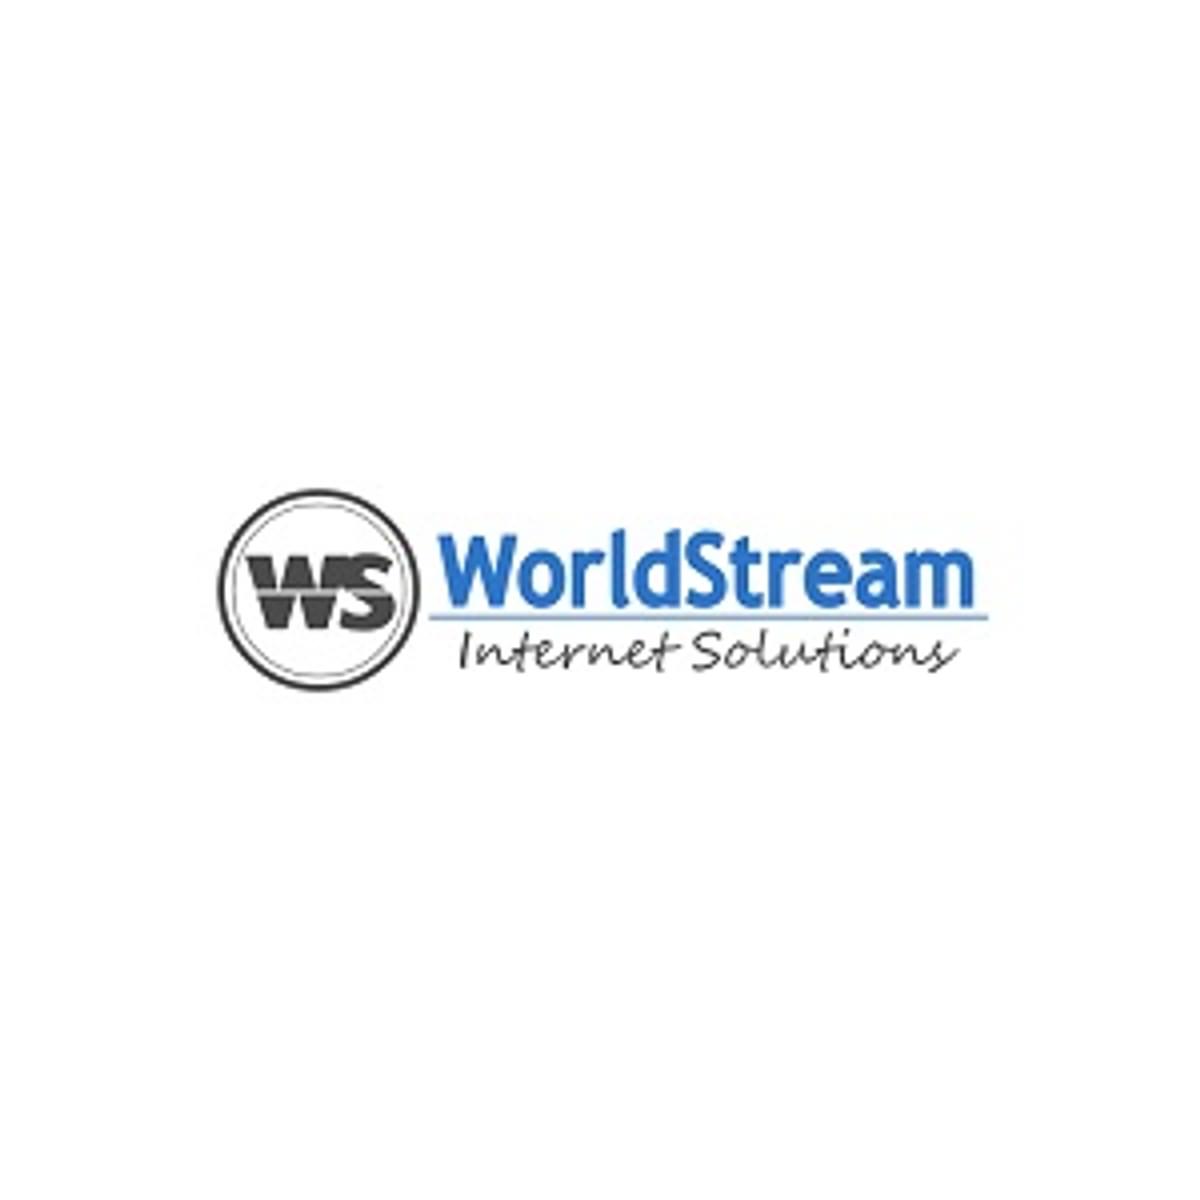 Hostingbedrijf WorldStream benoemt zes medewerkers tot directeur image